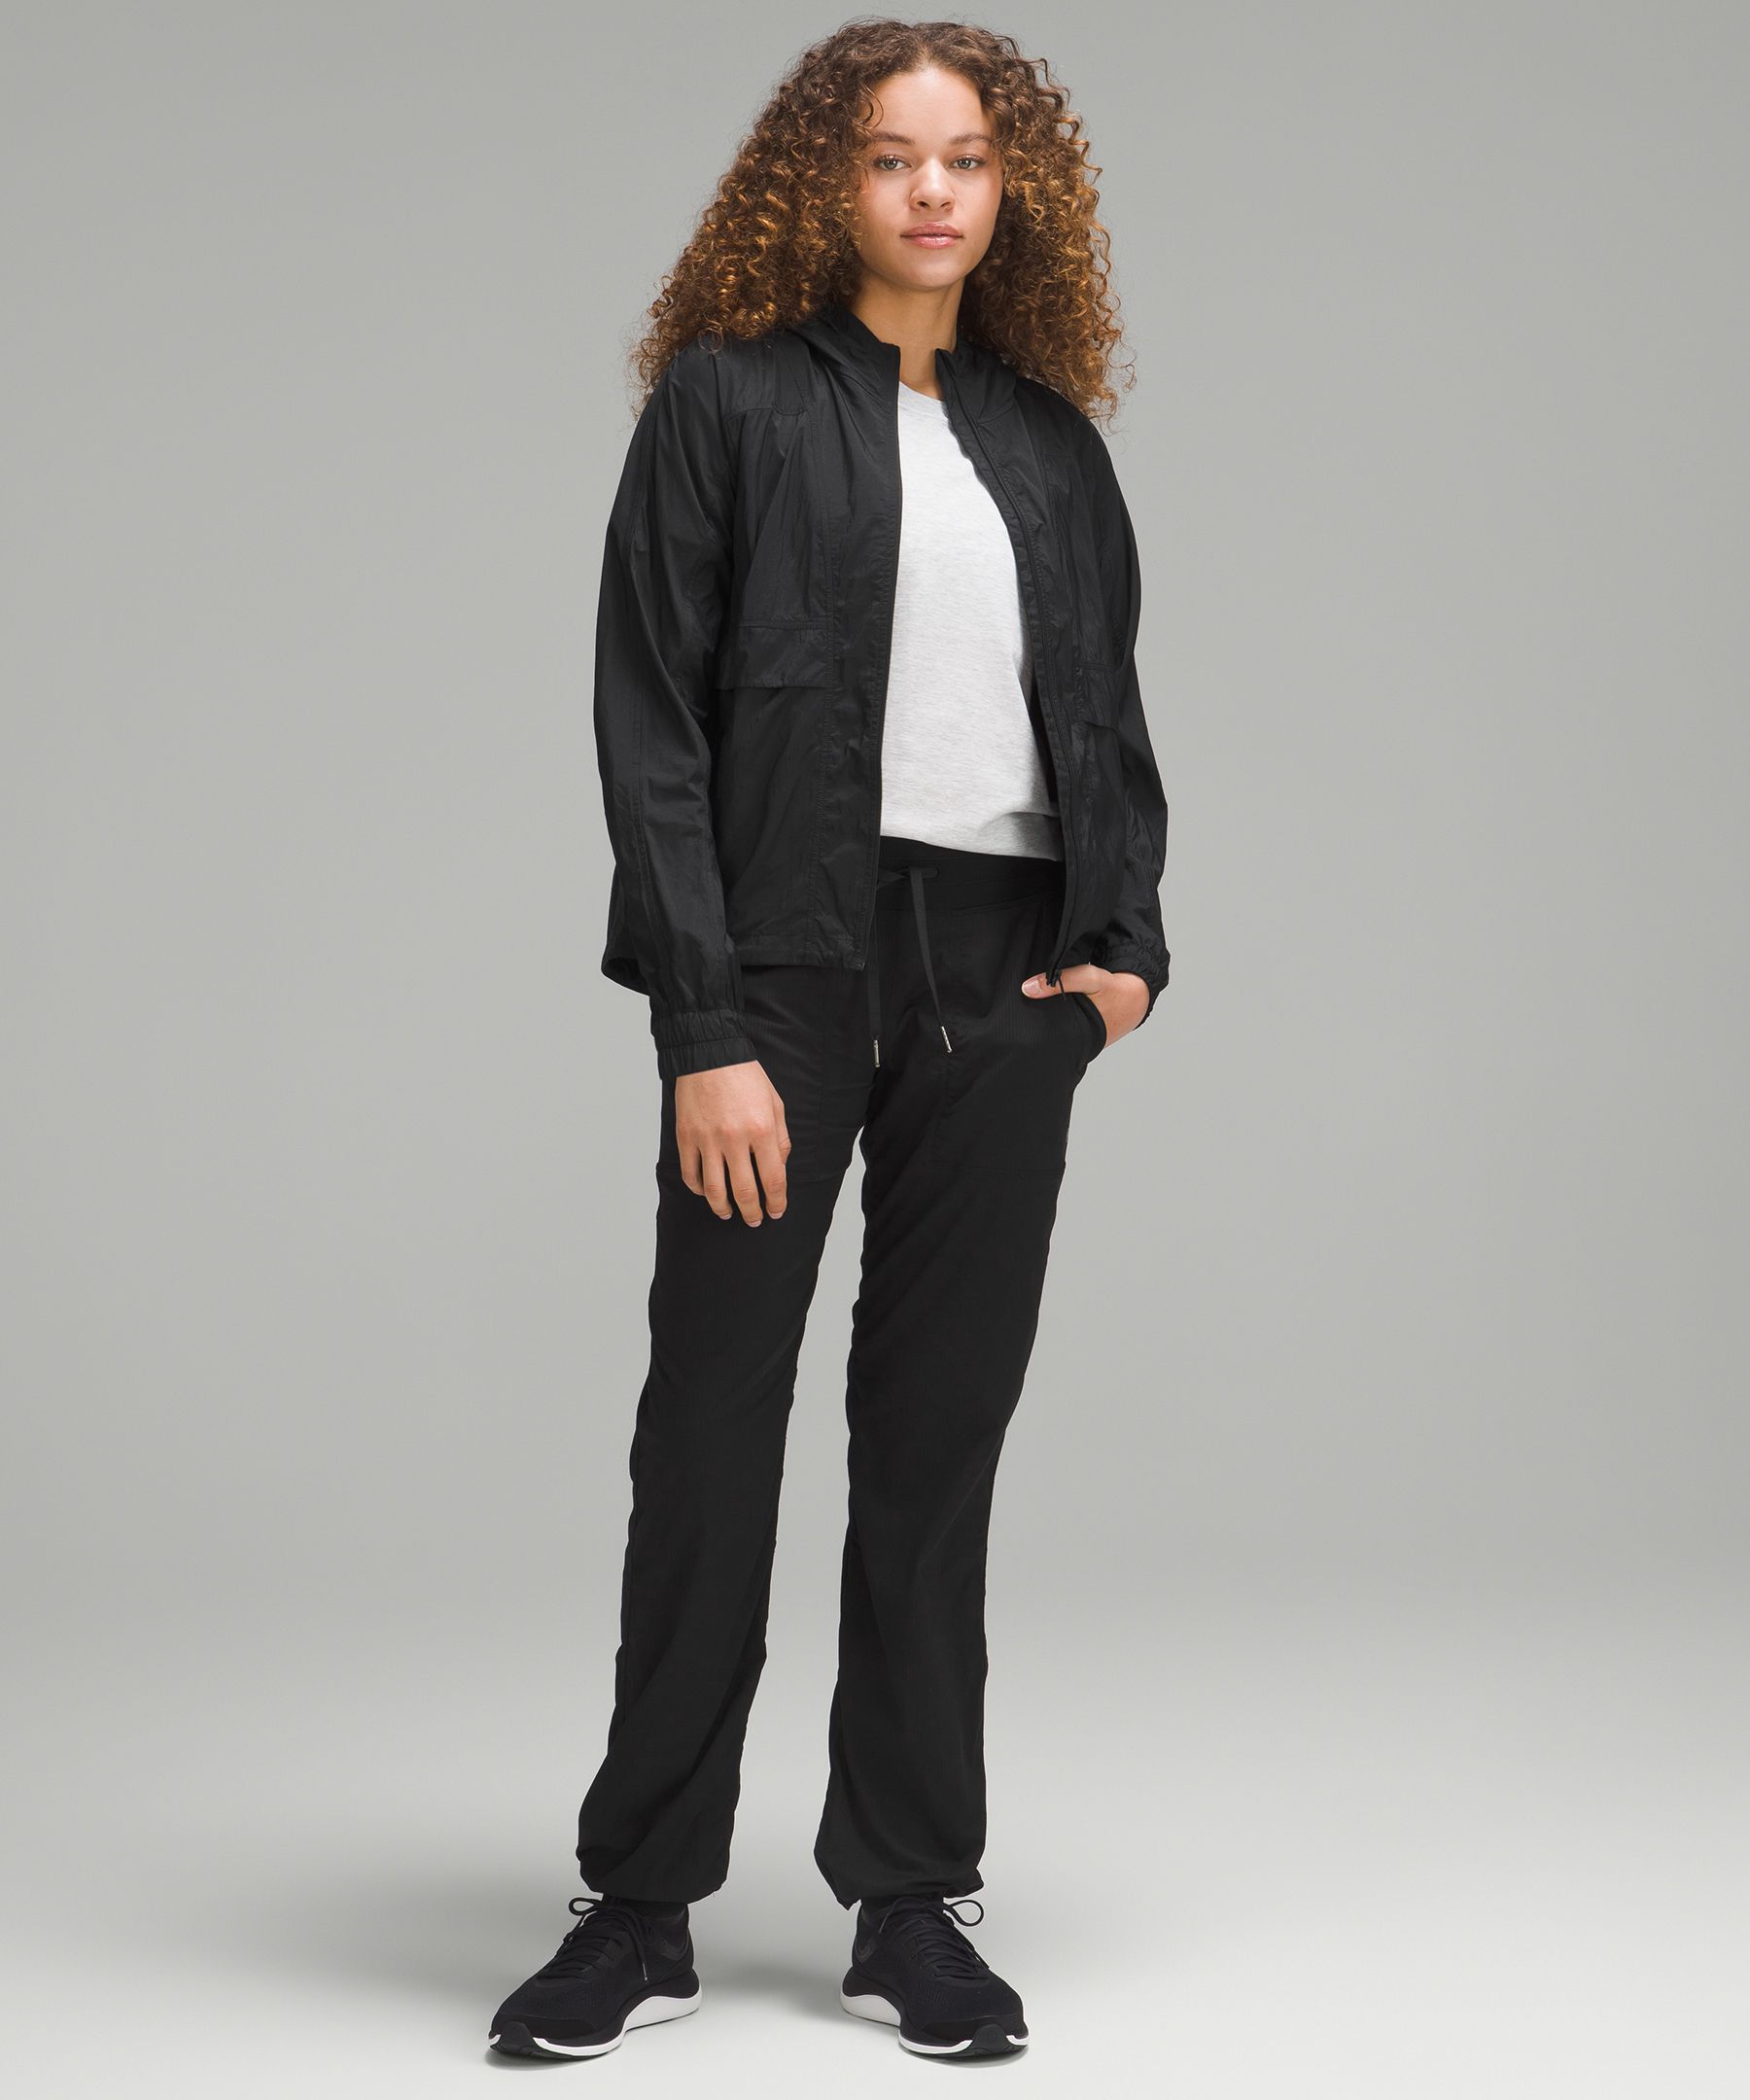 lululemon athletica, Jackets & Coats, Lululemon Athletica Womens Jacket  Model Rn 6259 Ca 35801